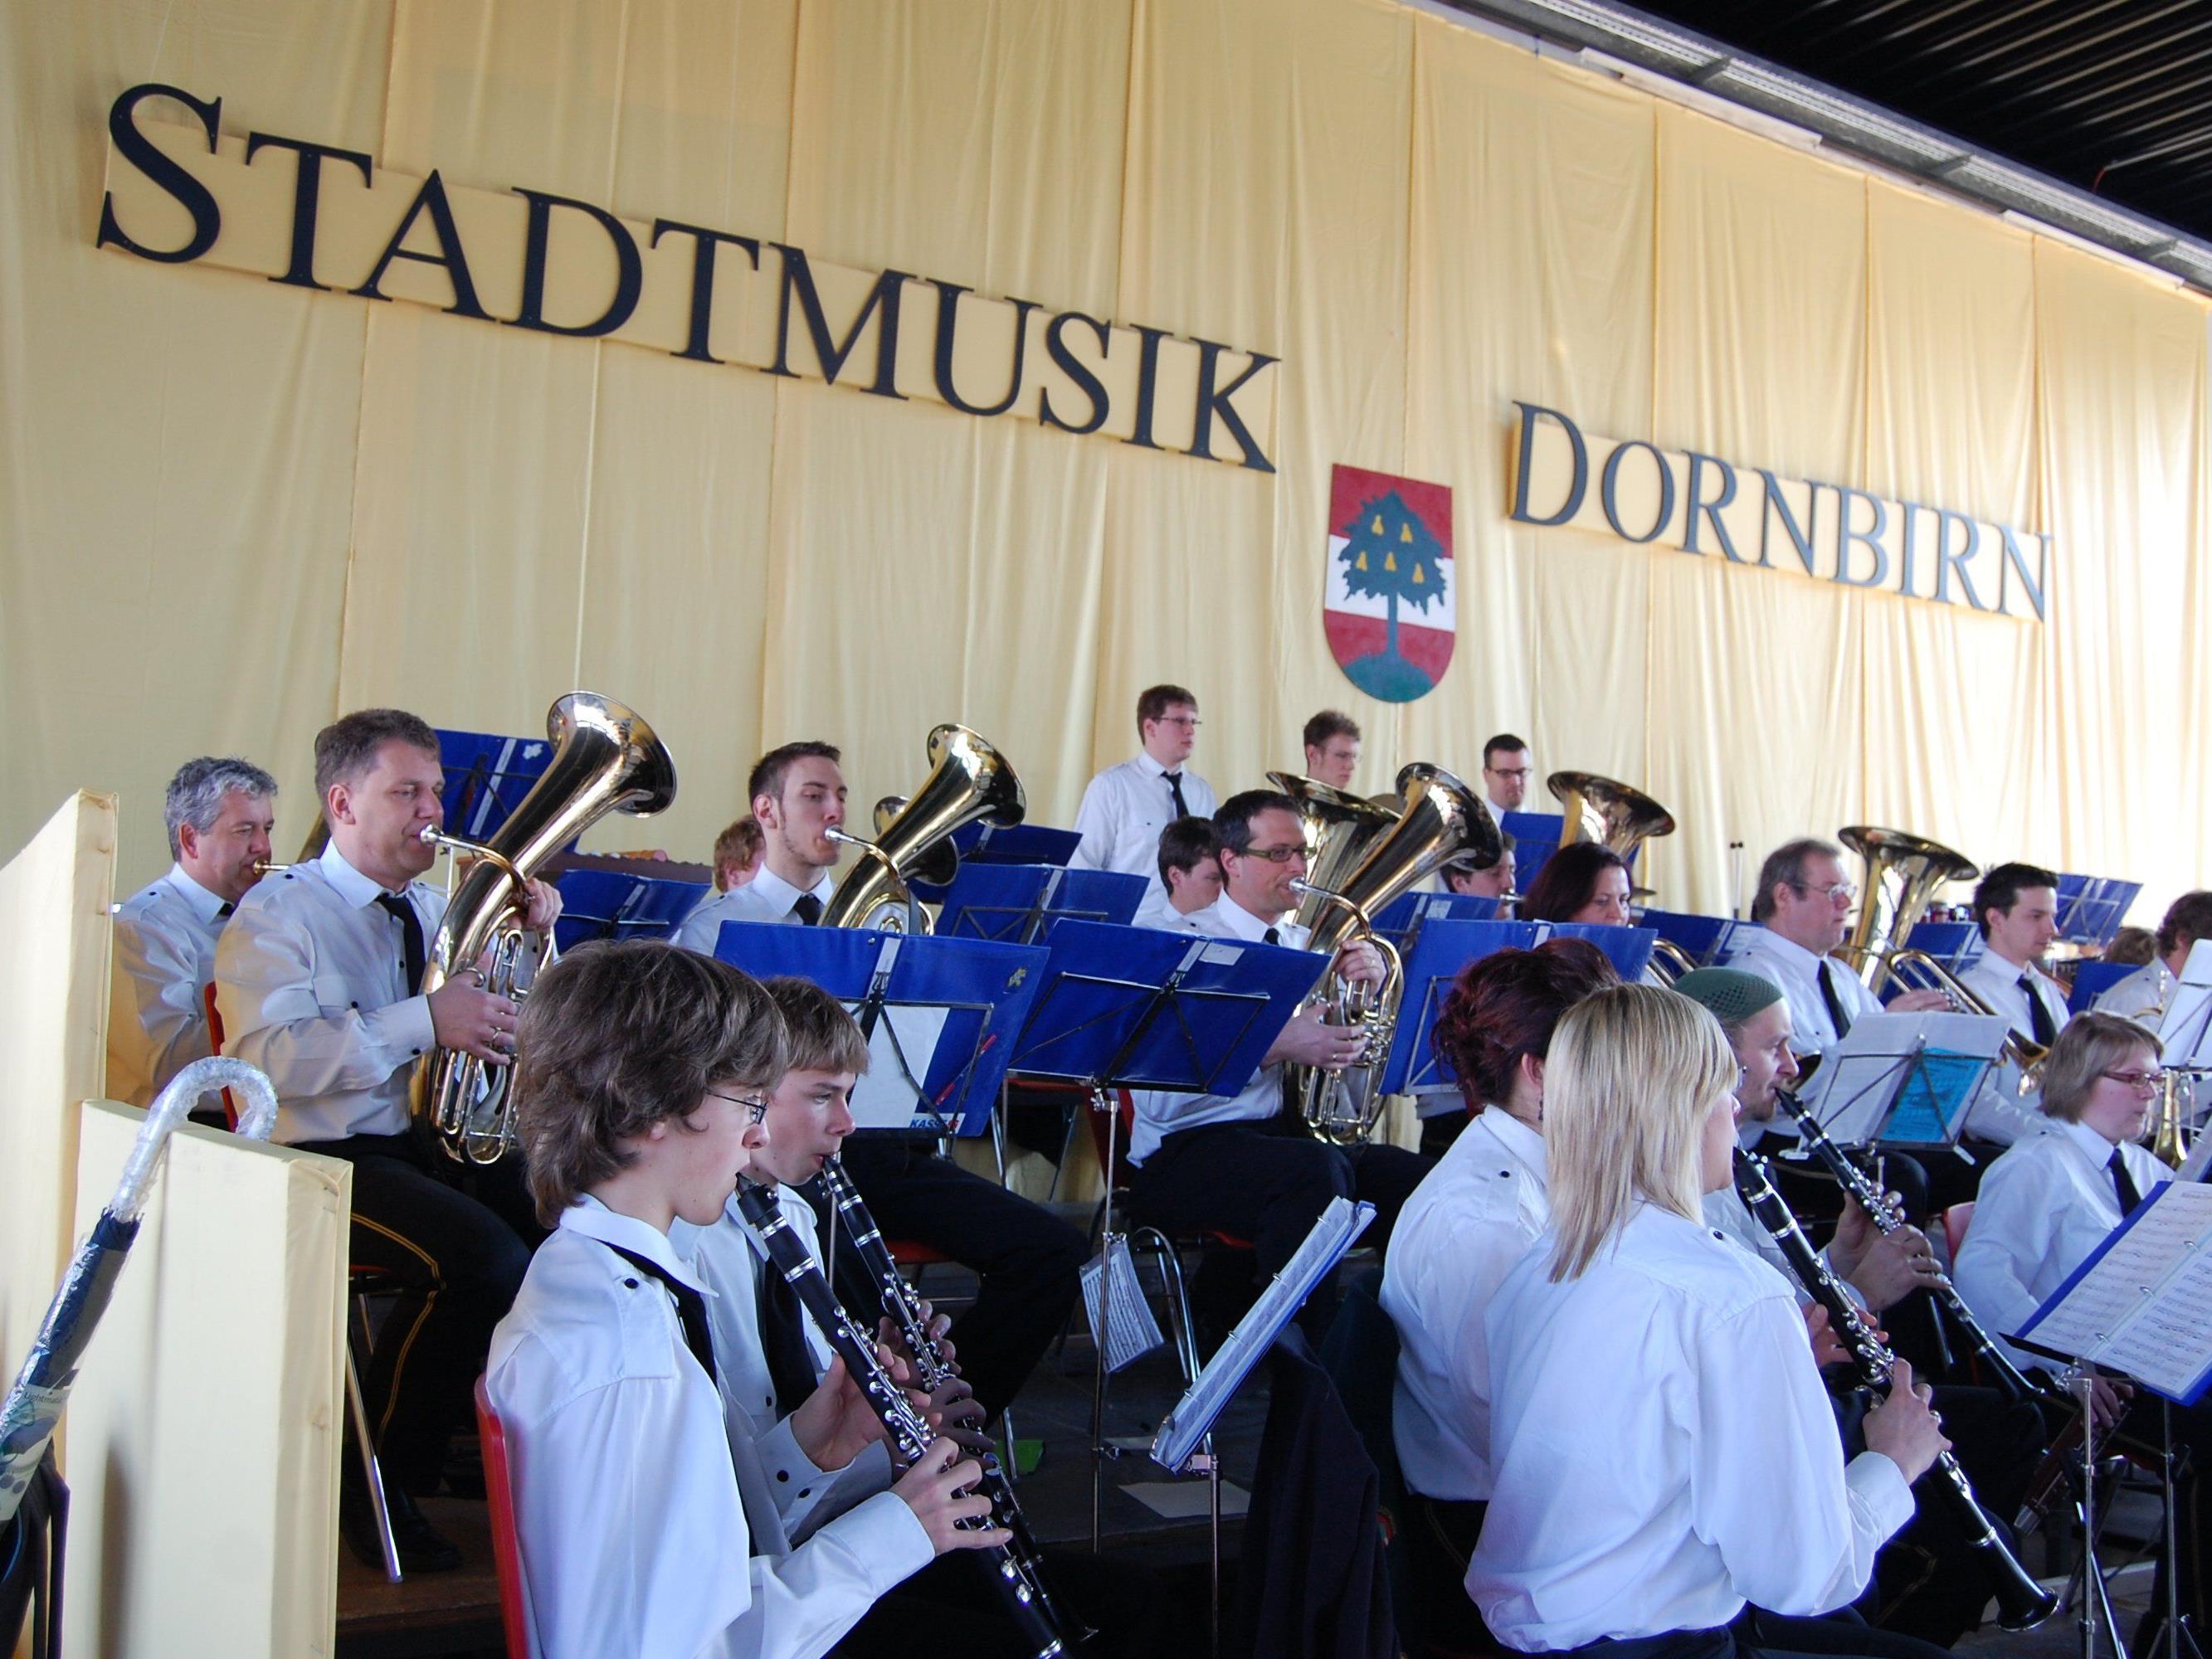 Die Stadtmusik Dornbirn freut sich am Ostermontag auf zahlreiche Besucher im Feuerwehrhaus